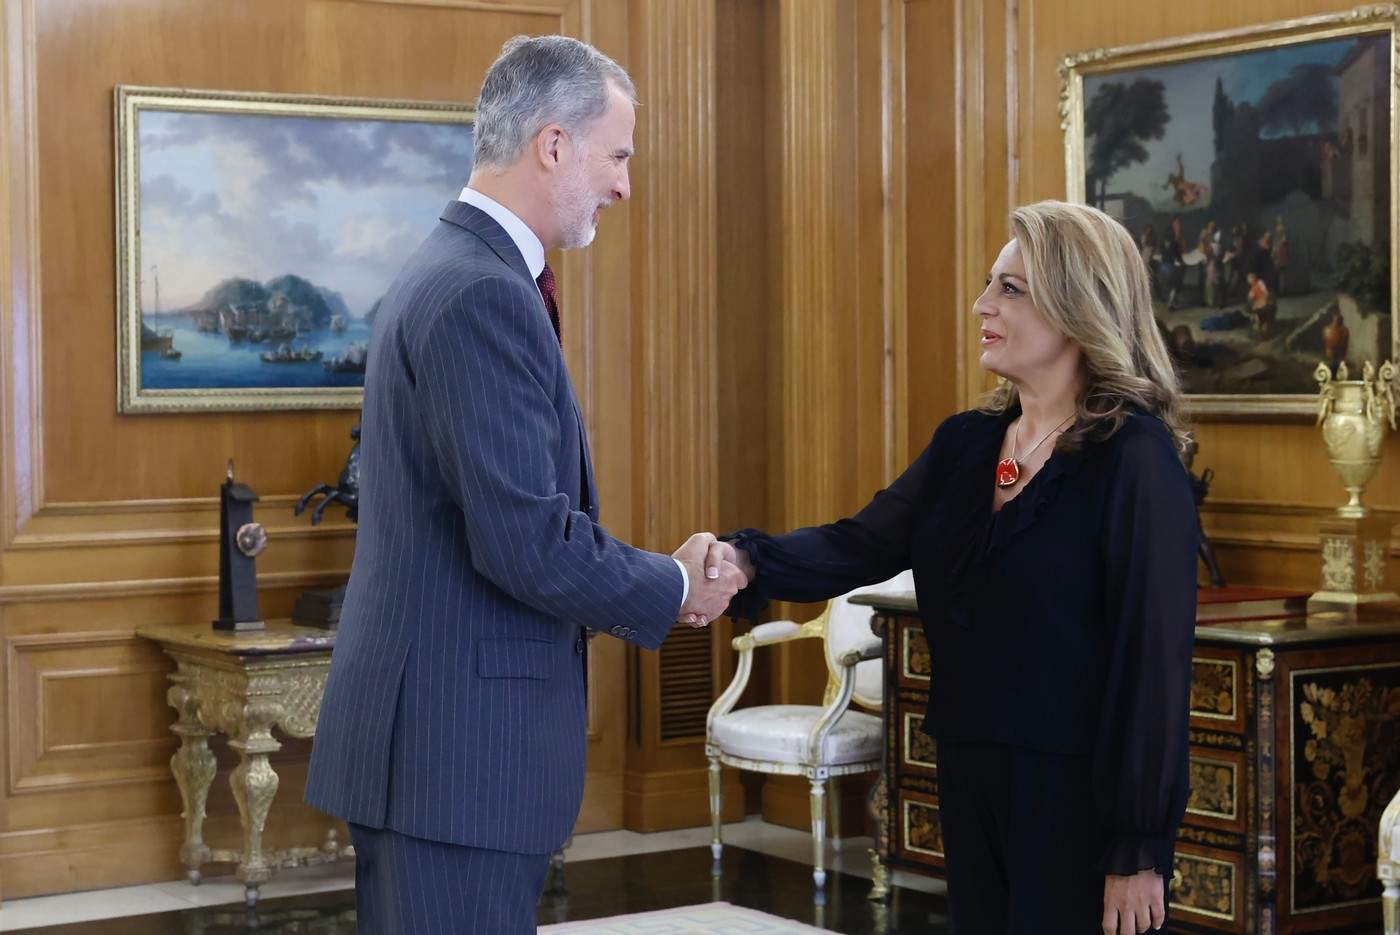 Su Majestad el Rey recibe el saludo de la representante de Coalición Canaria, Doña Cristina Valido García

Palacio de La Zarzuela. Madrid, 02.10.2023